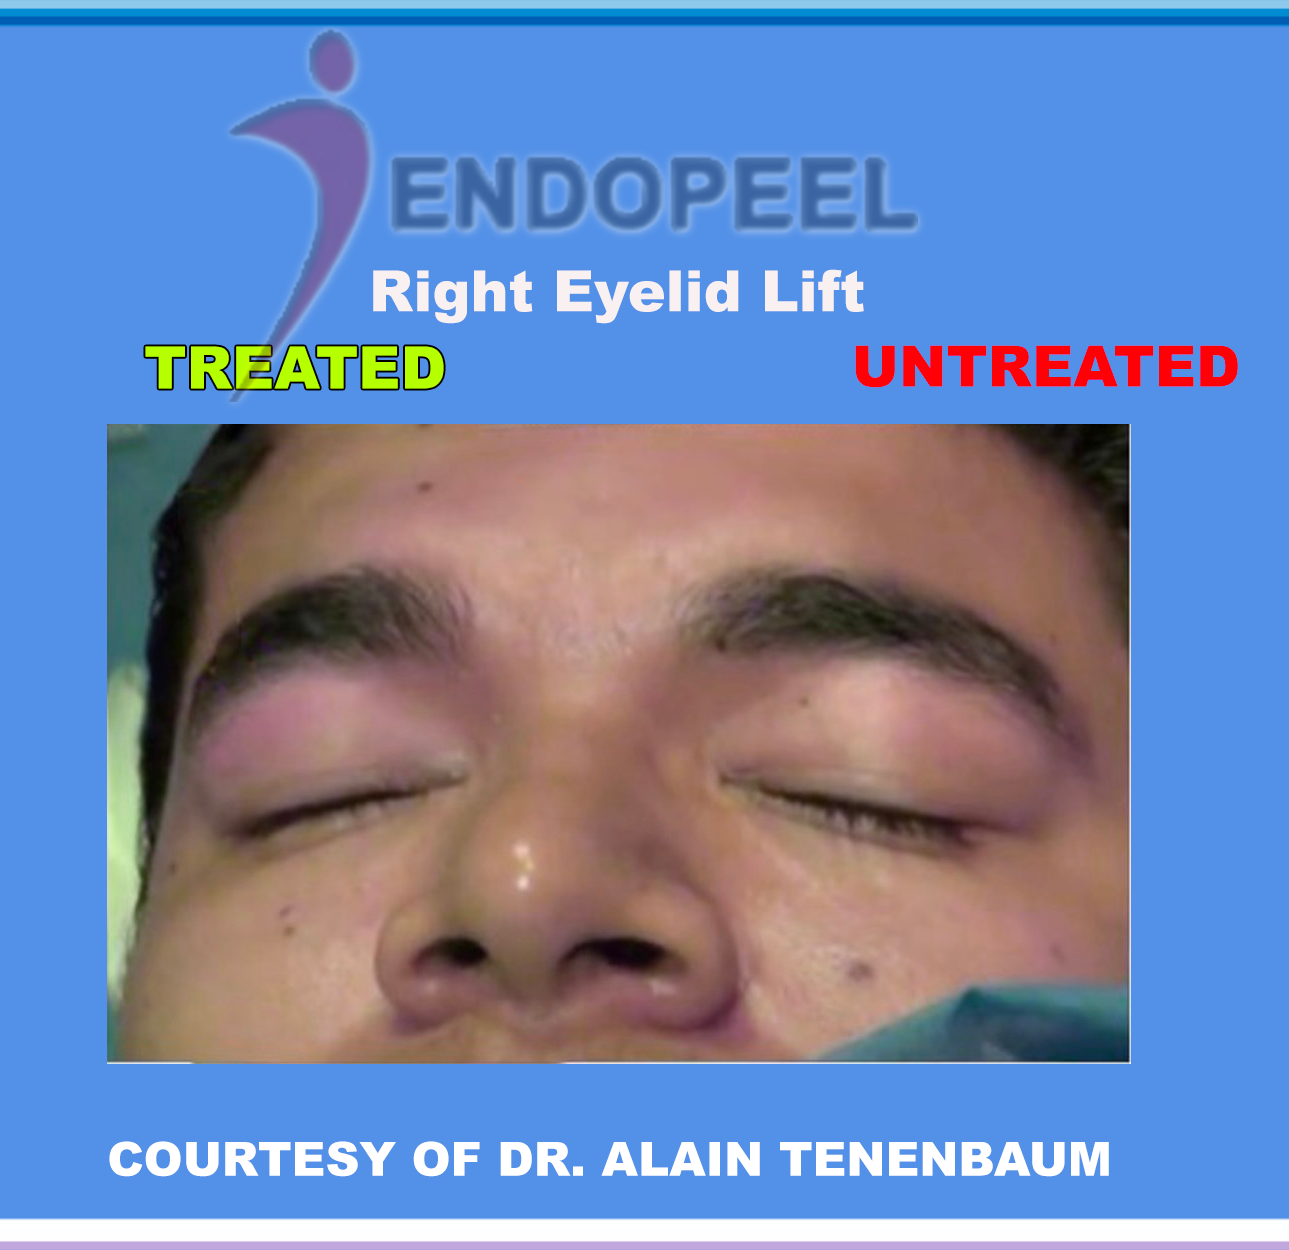 R-eyelid-lift-closedeye-endopeel